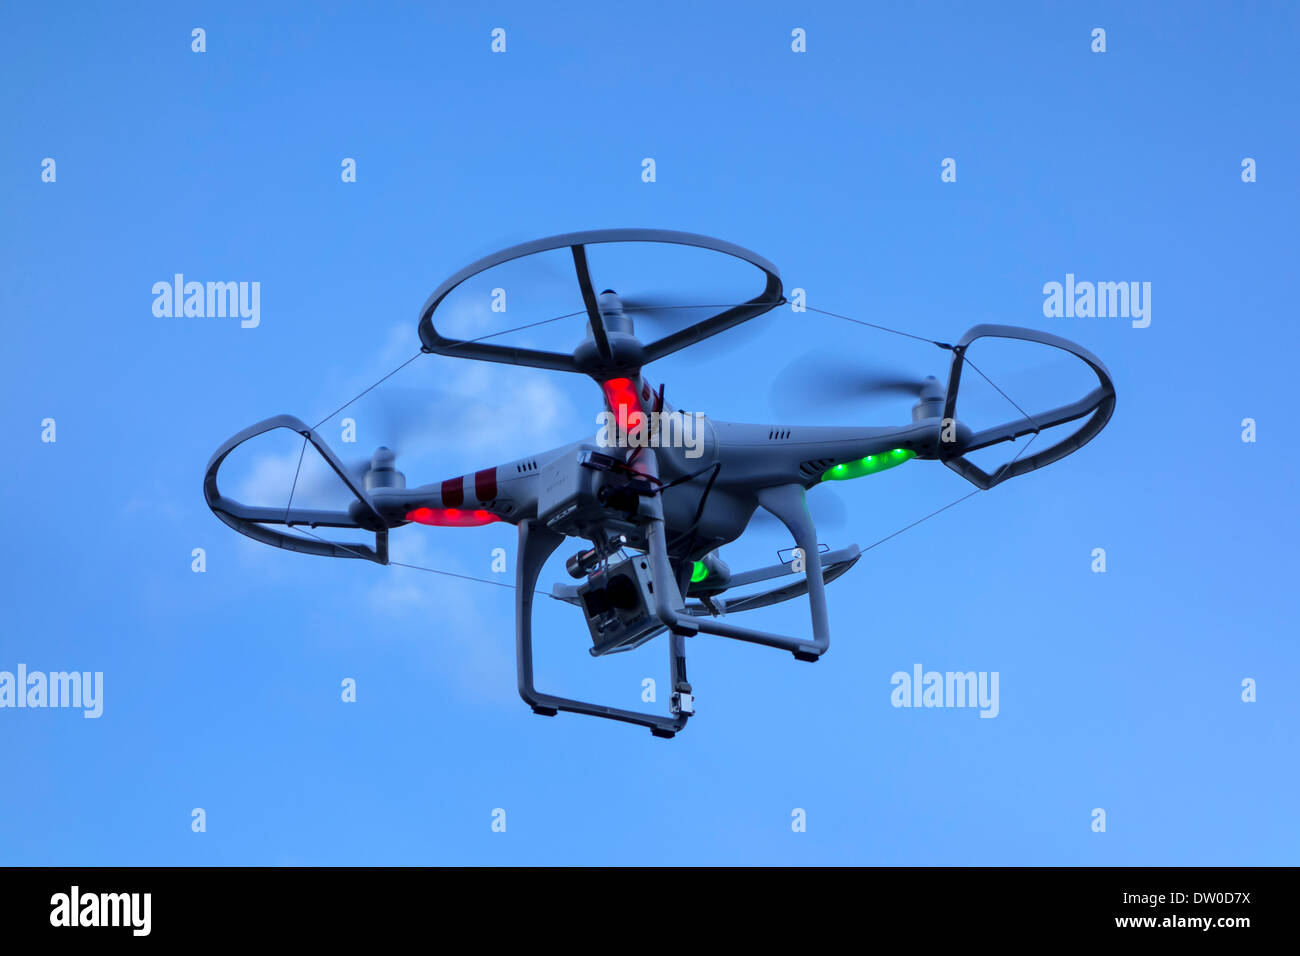 Miniatur-Drohne / unmanned aerial vehicles / UAV ausgestattet mit Kamera im Flug gegen blauen Himmel mit Wolken Stockfoto